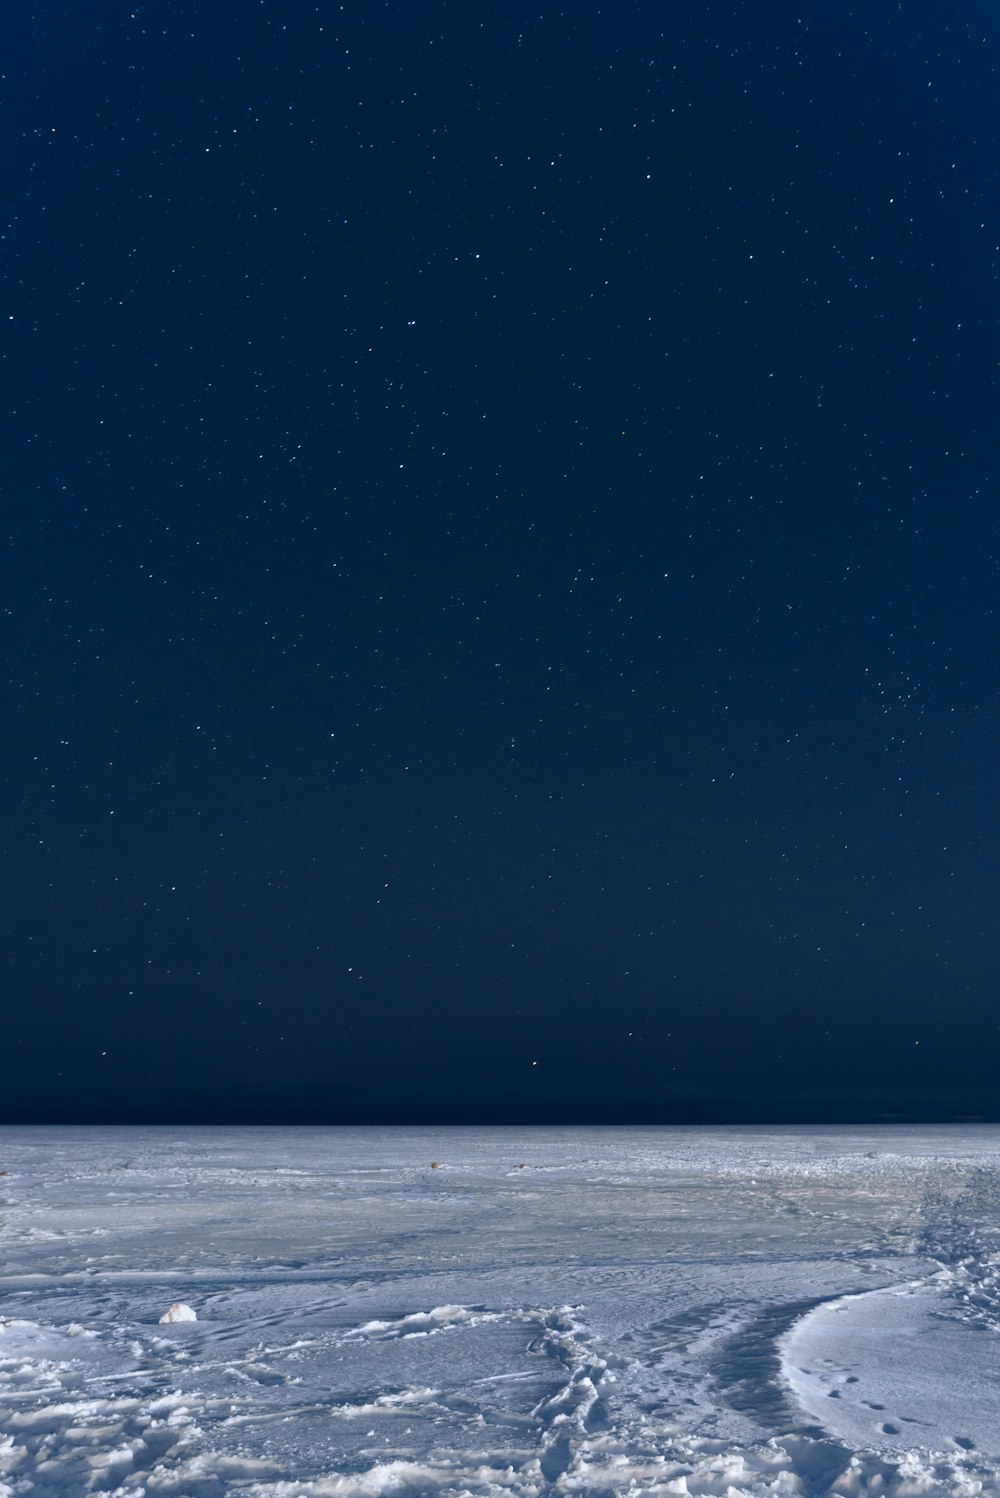 El cielo nocturno está lleno de estrellas sobre una vasta extensión de nieve